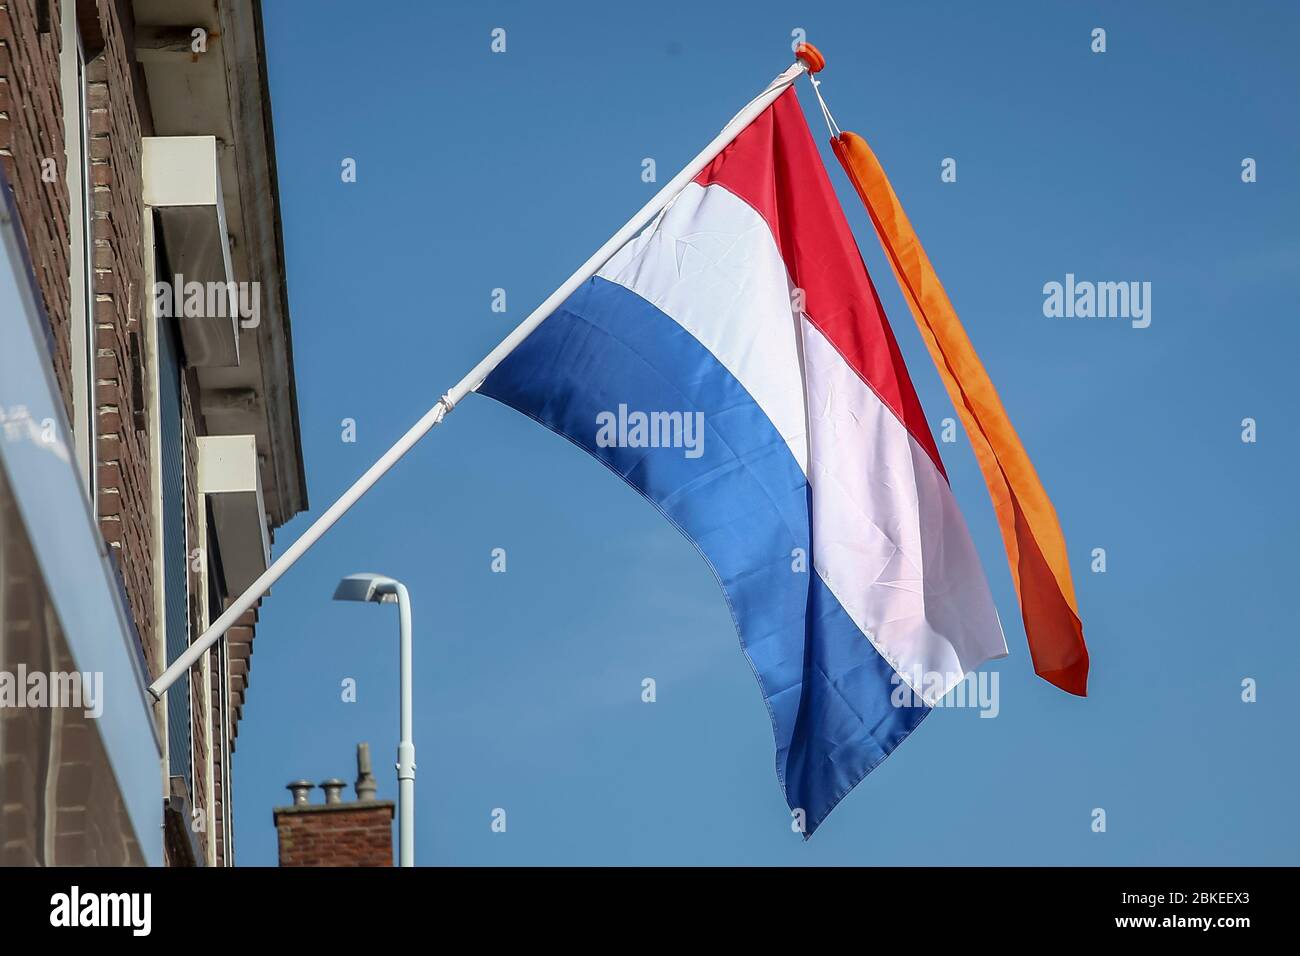 Nederlandse vlag en wimpel hi-res stock photography and images - Alamy